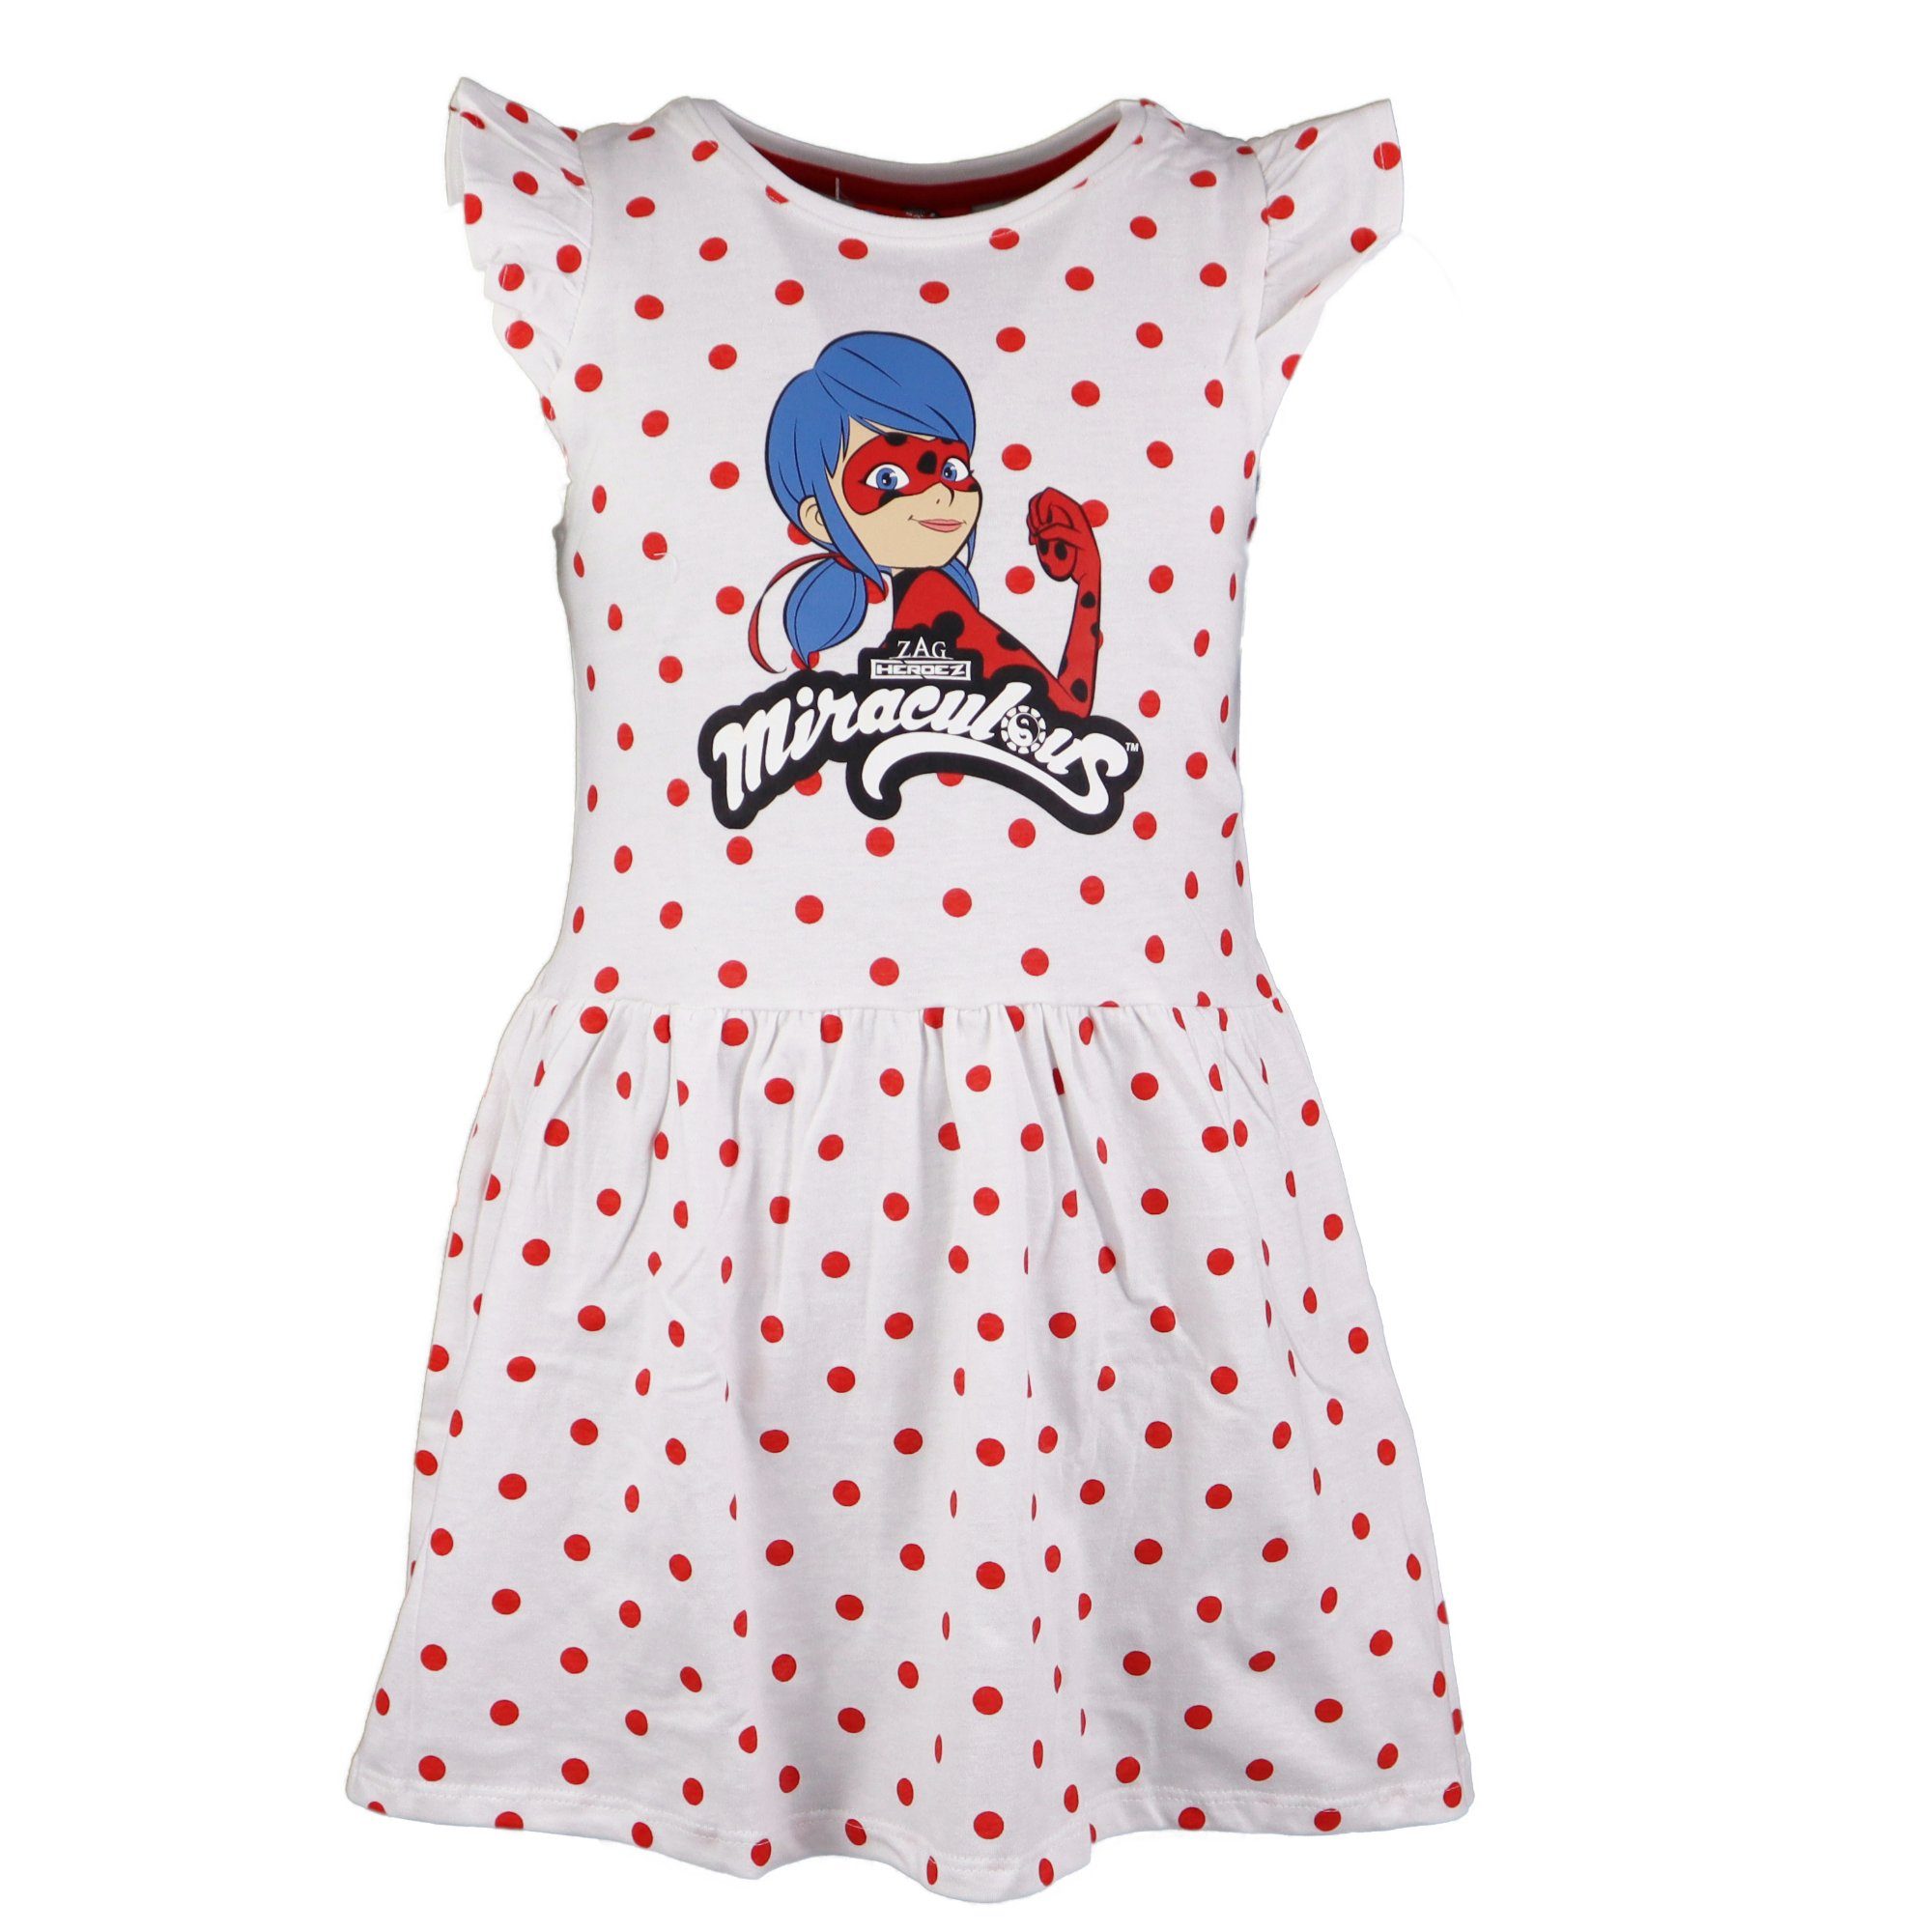 Miraculous - Ladybug Sommerkleid Pünktchen Mädchen Kinder Kleid Gr. 110 bis 140, Baumwolle, Rot oder Schwarz